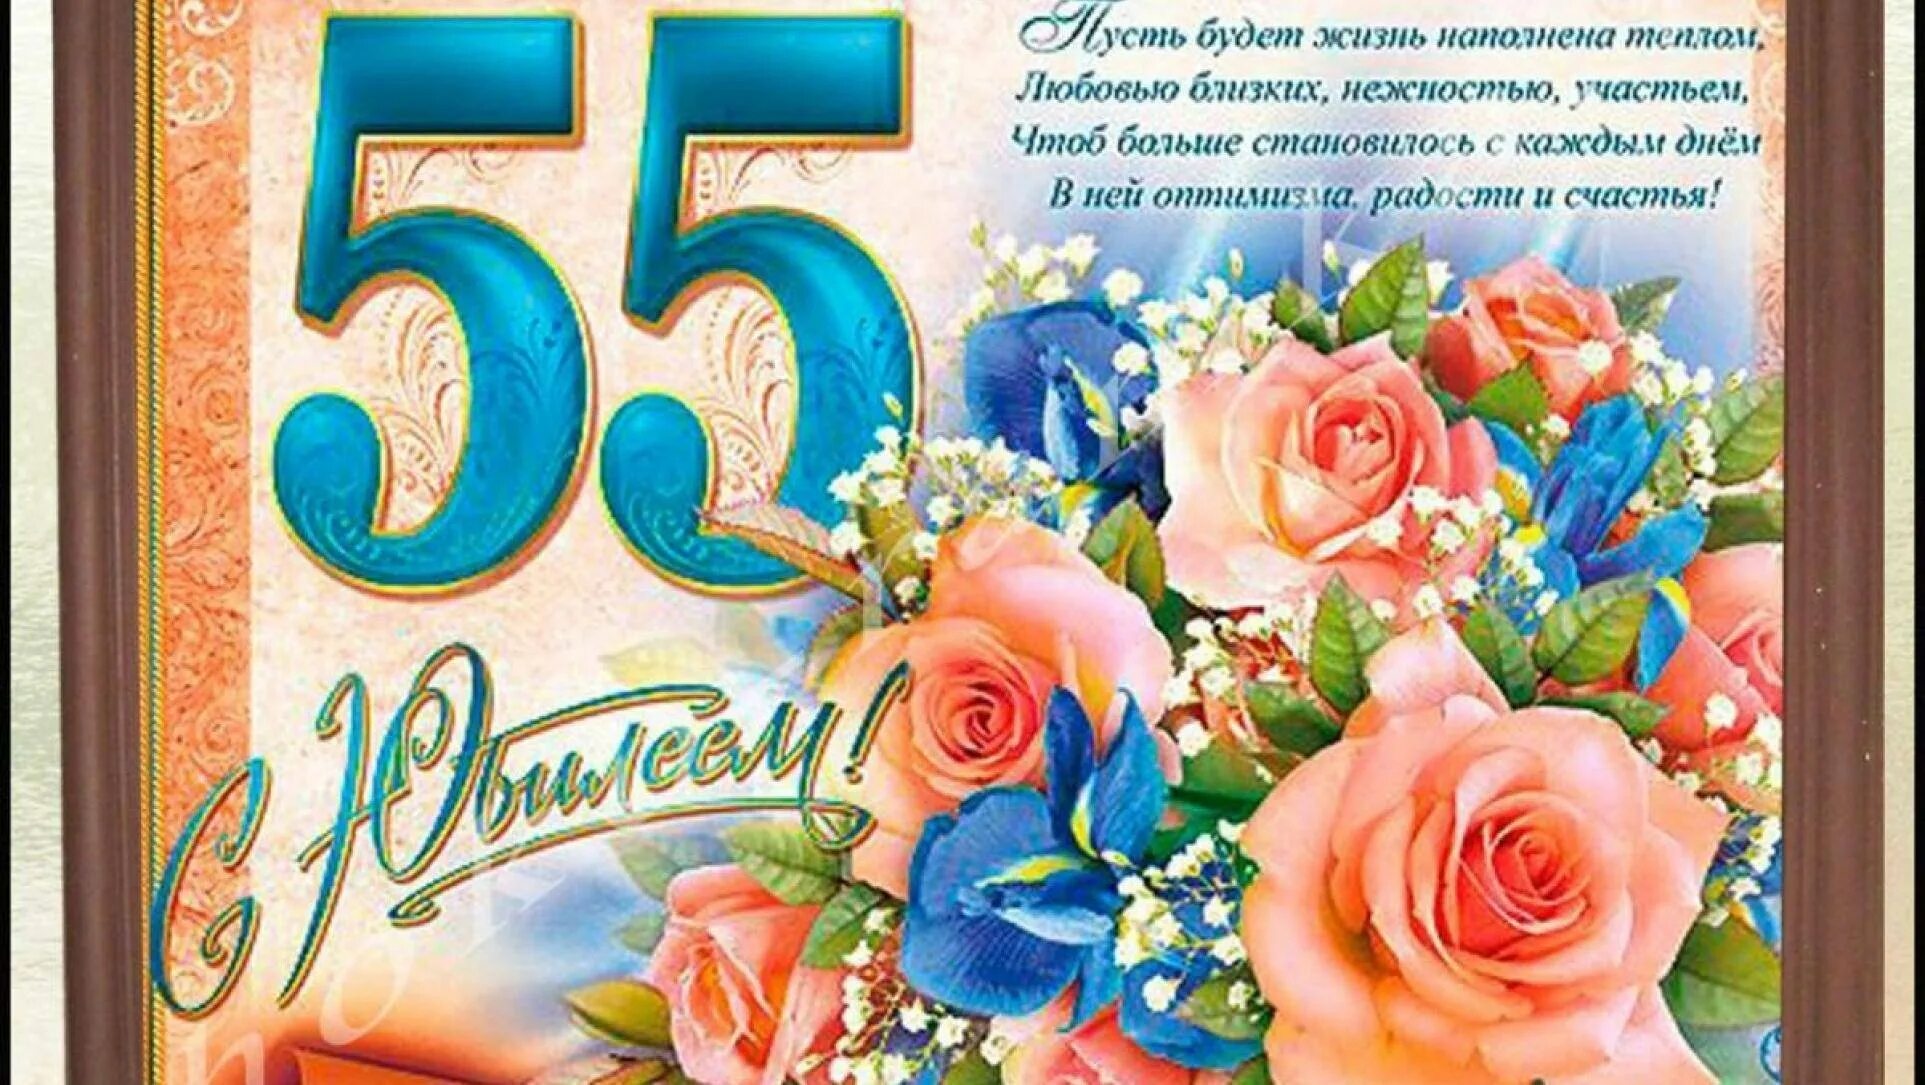 Картинки с поздравлением 55 лет. С юбилеем 55. Поздравление с юбилеем 55 женщине. Открытка "с юбилеем! 55". Открытка с юбилеем 55 лет женщине с поздравлением.